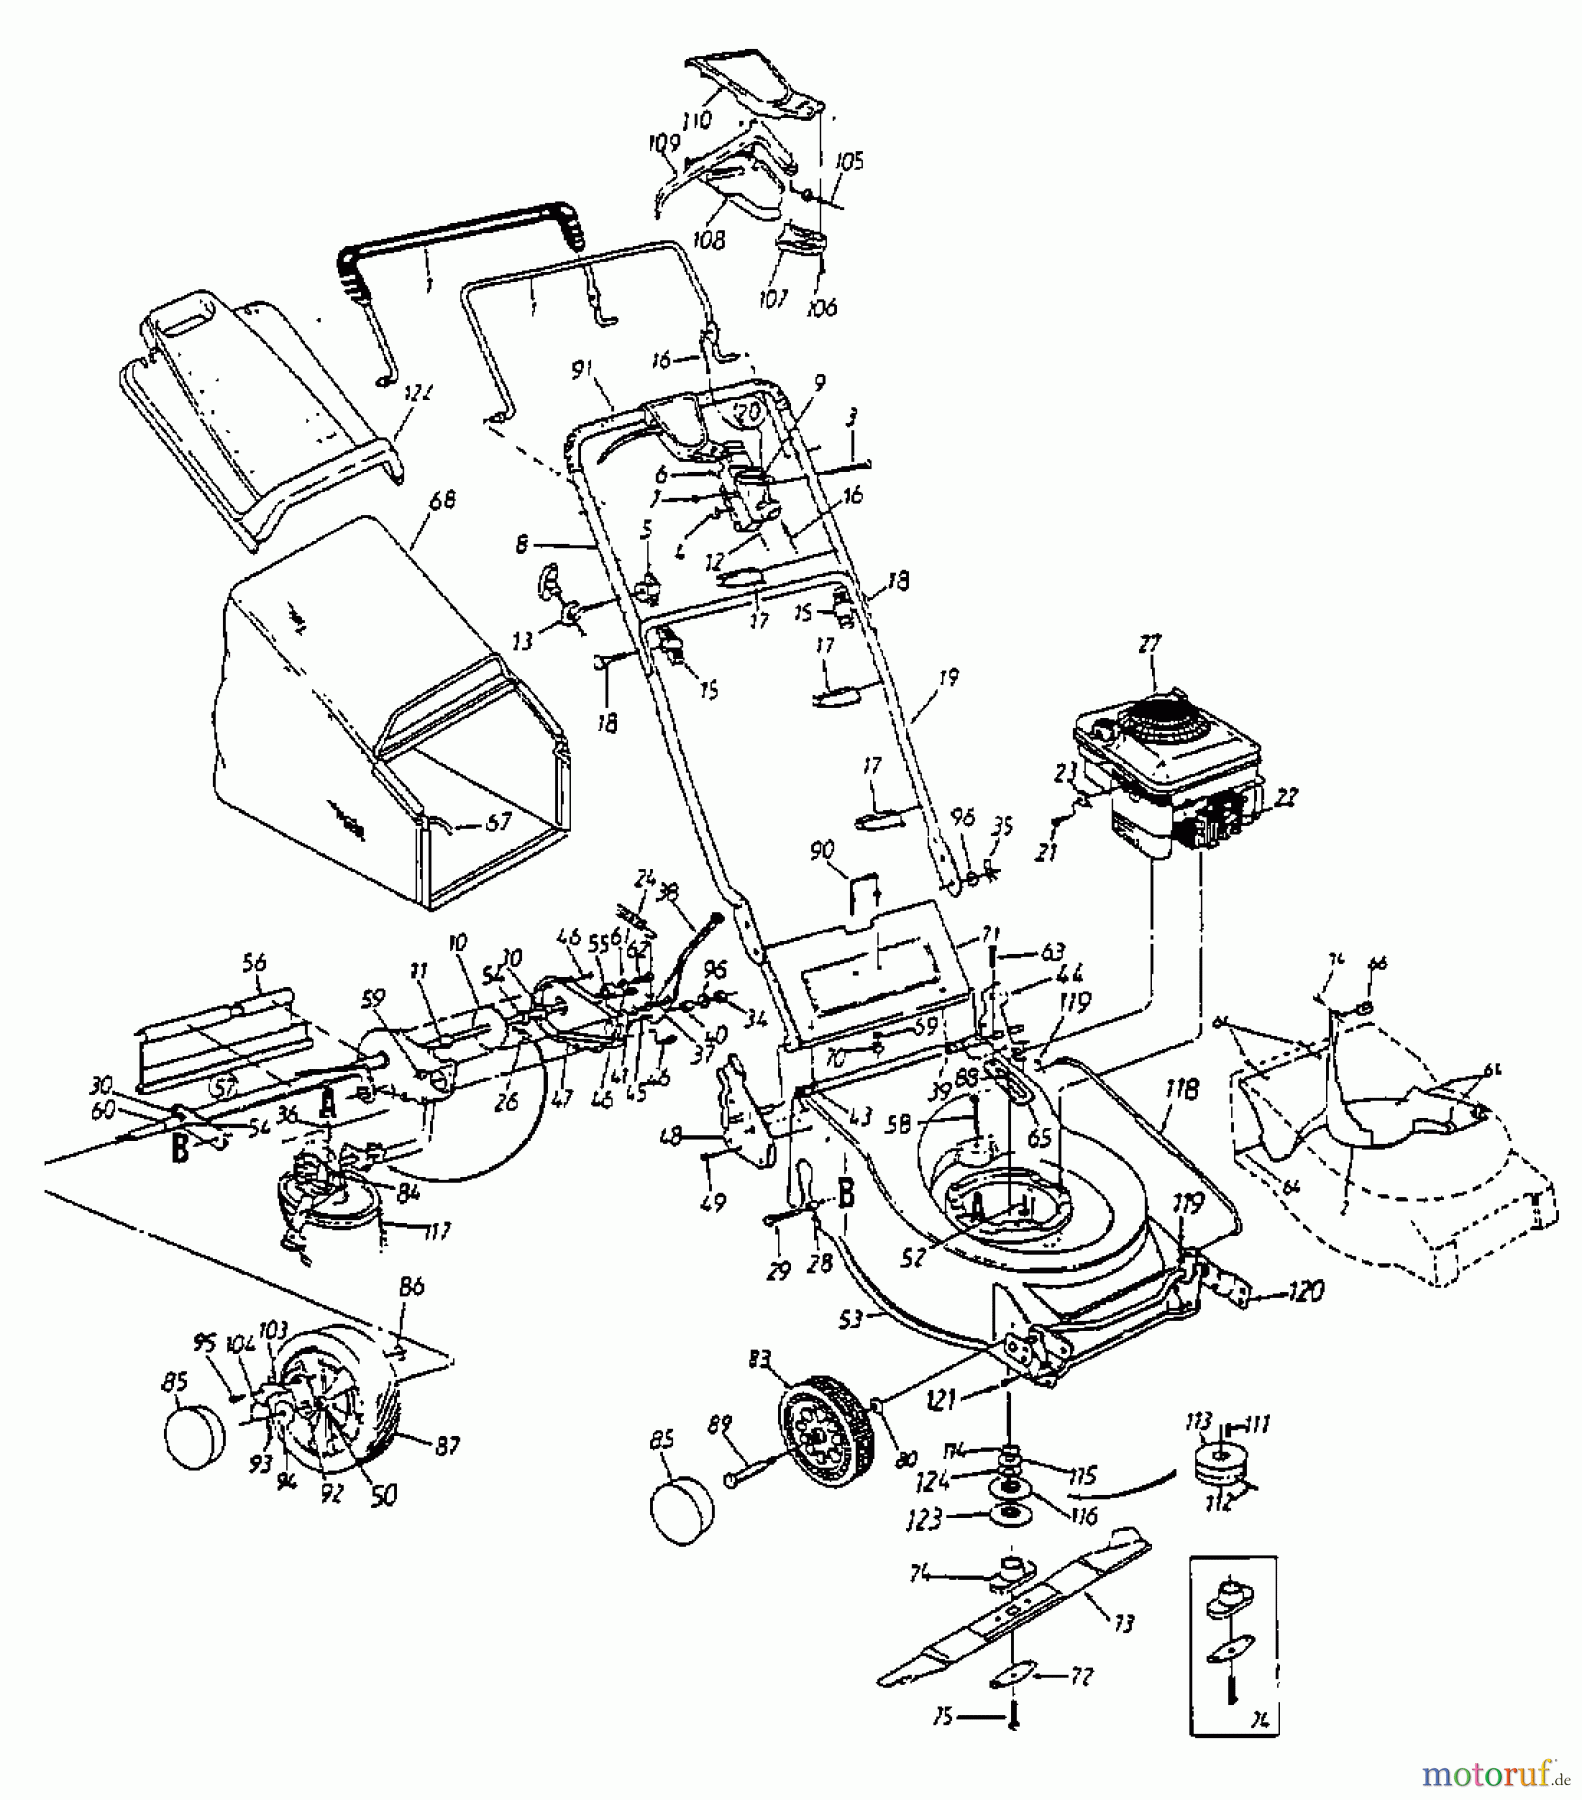  Lawnflite Motormäher mit Antrieb 384 SP 12A-698C611  (1998) Grundgerät